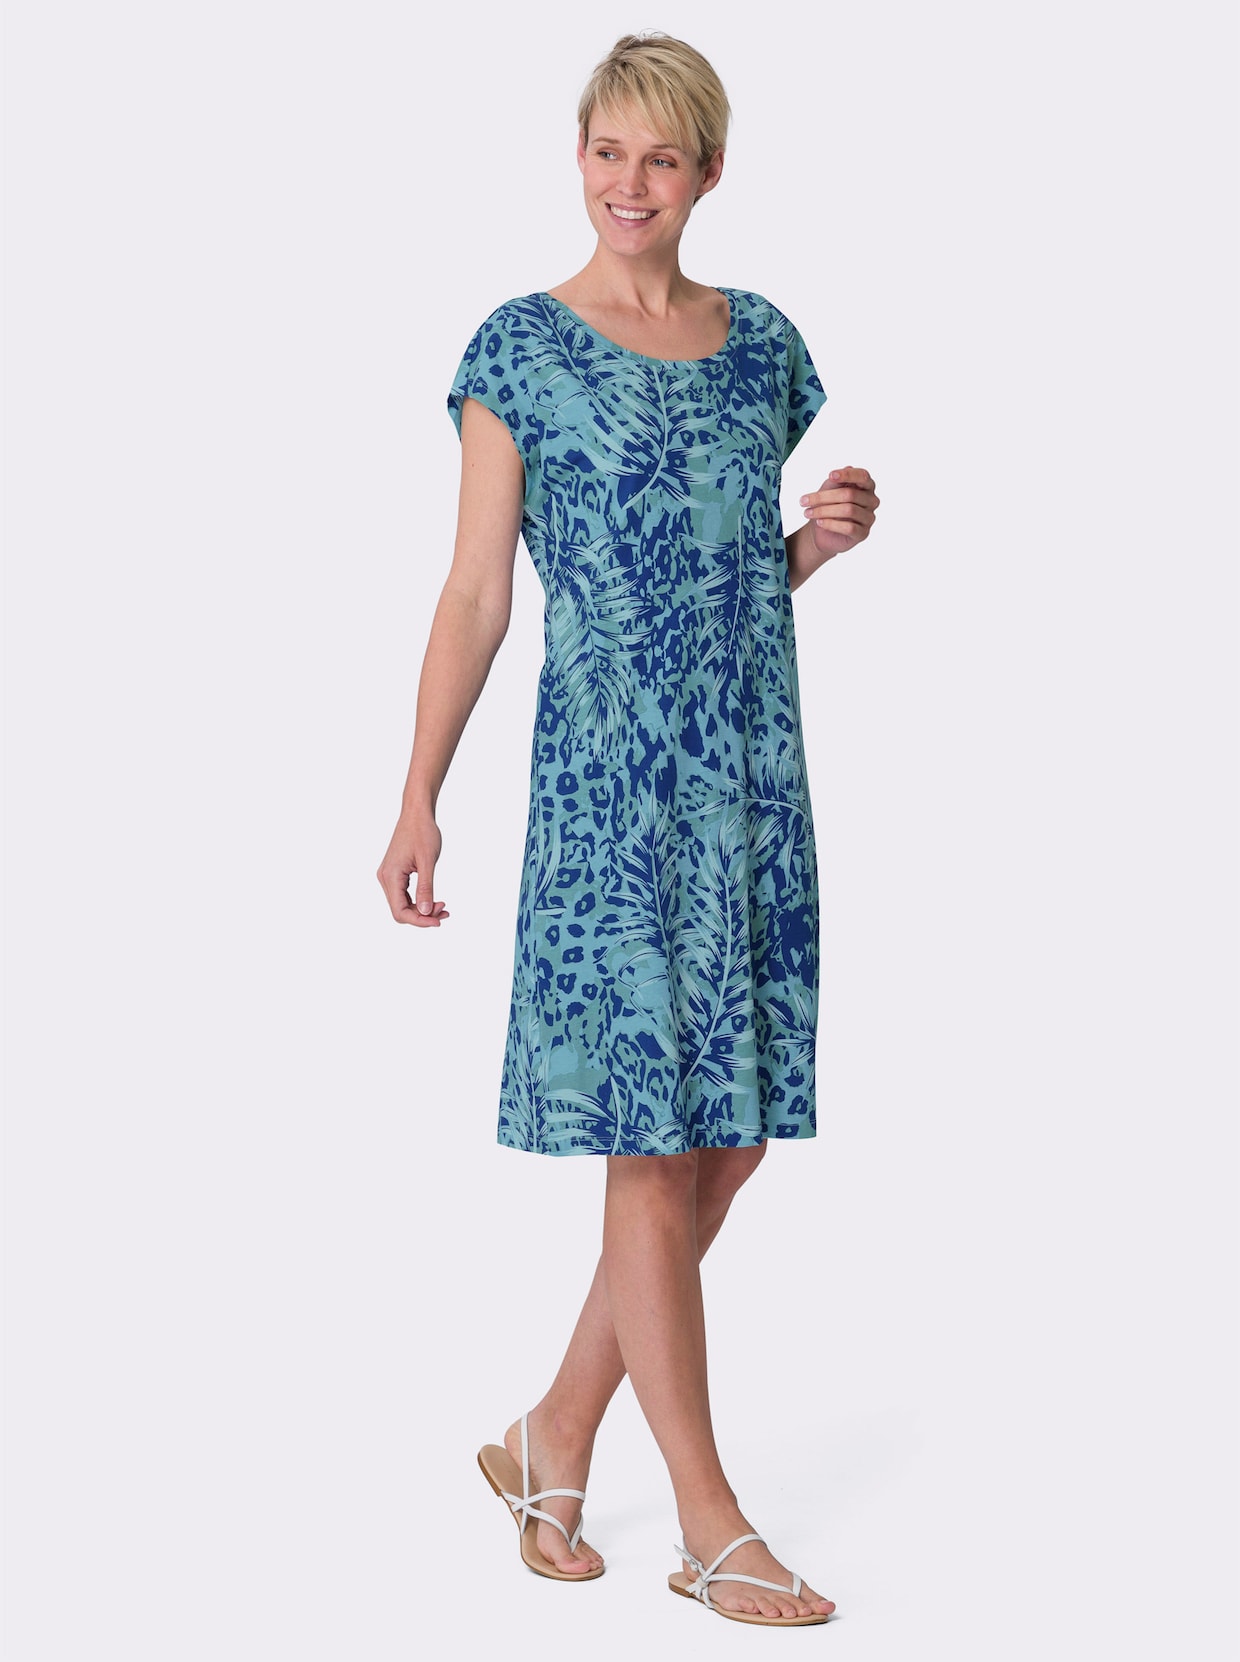 Letné šaty - kráľovsko modro-akvamarínová potlač